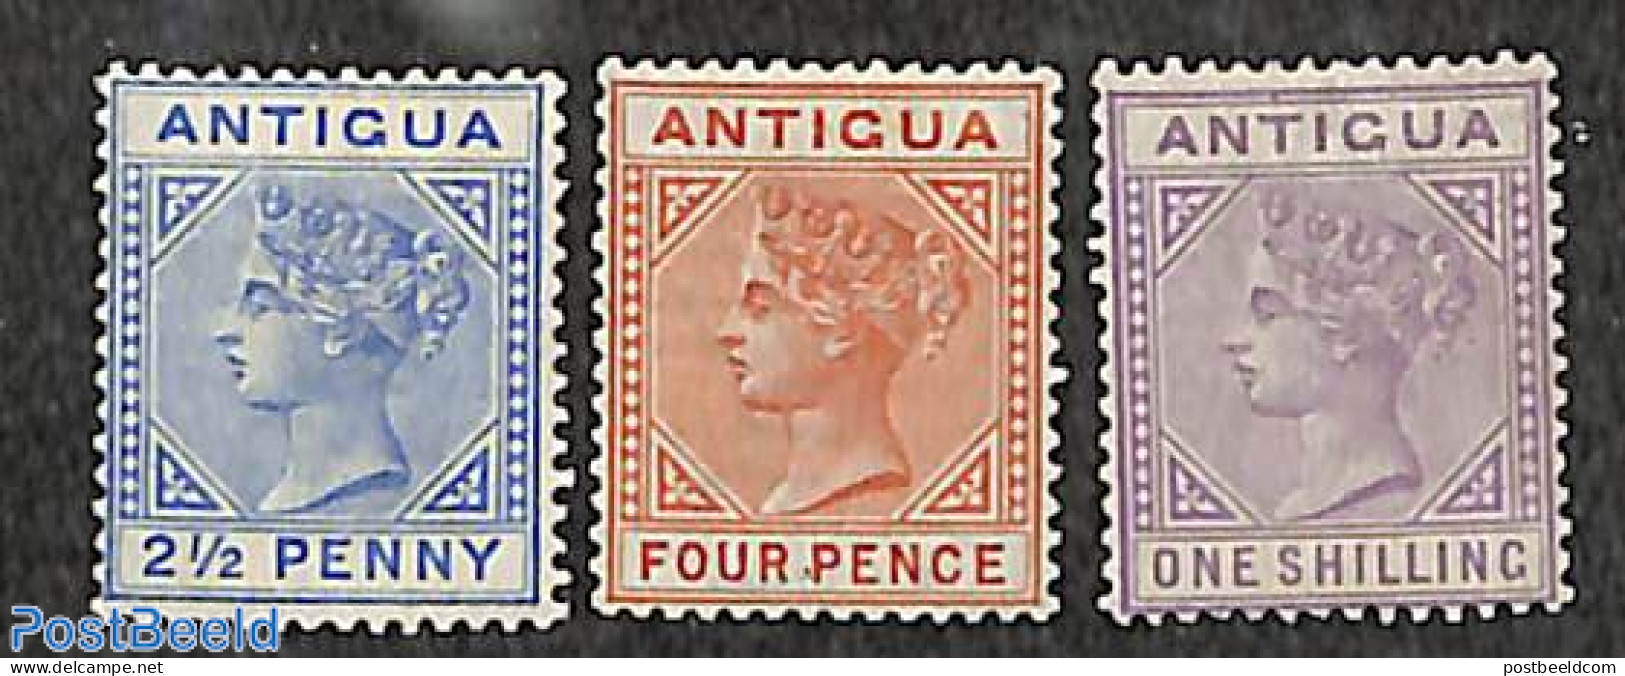 Antigua & Barbuda 1886 Queen Victoria 3v, WM CA-Crown, Unused (hinged) - Antigua Y Barbuda (1981-...)